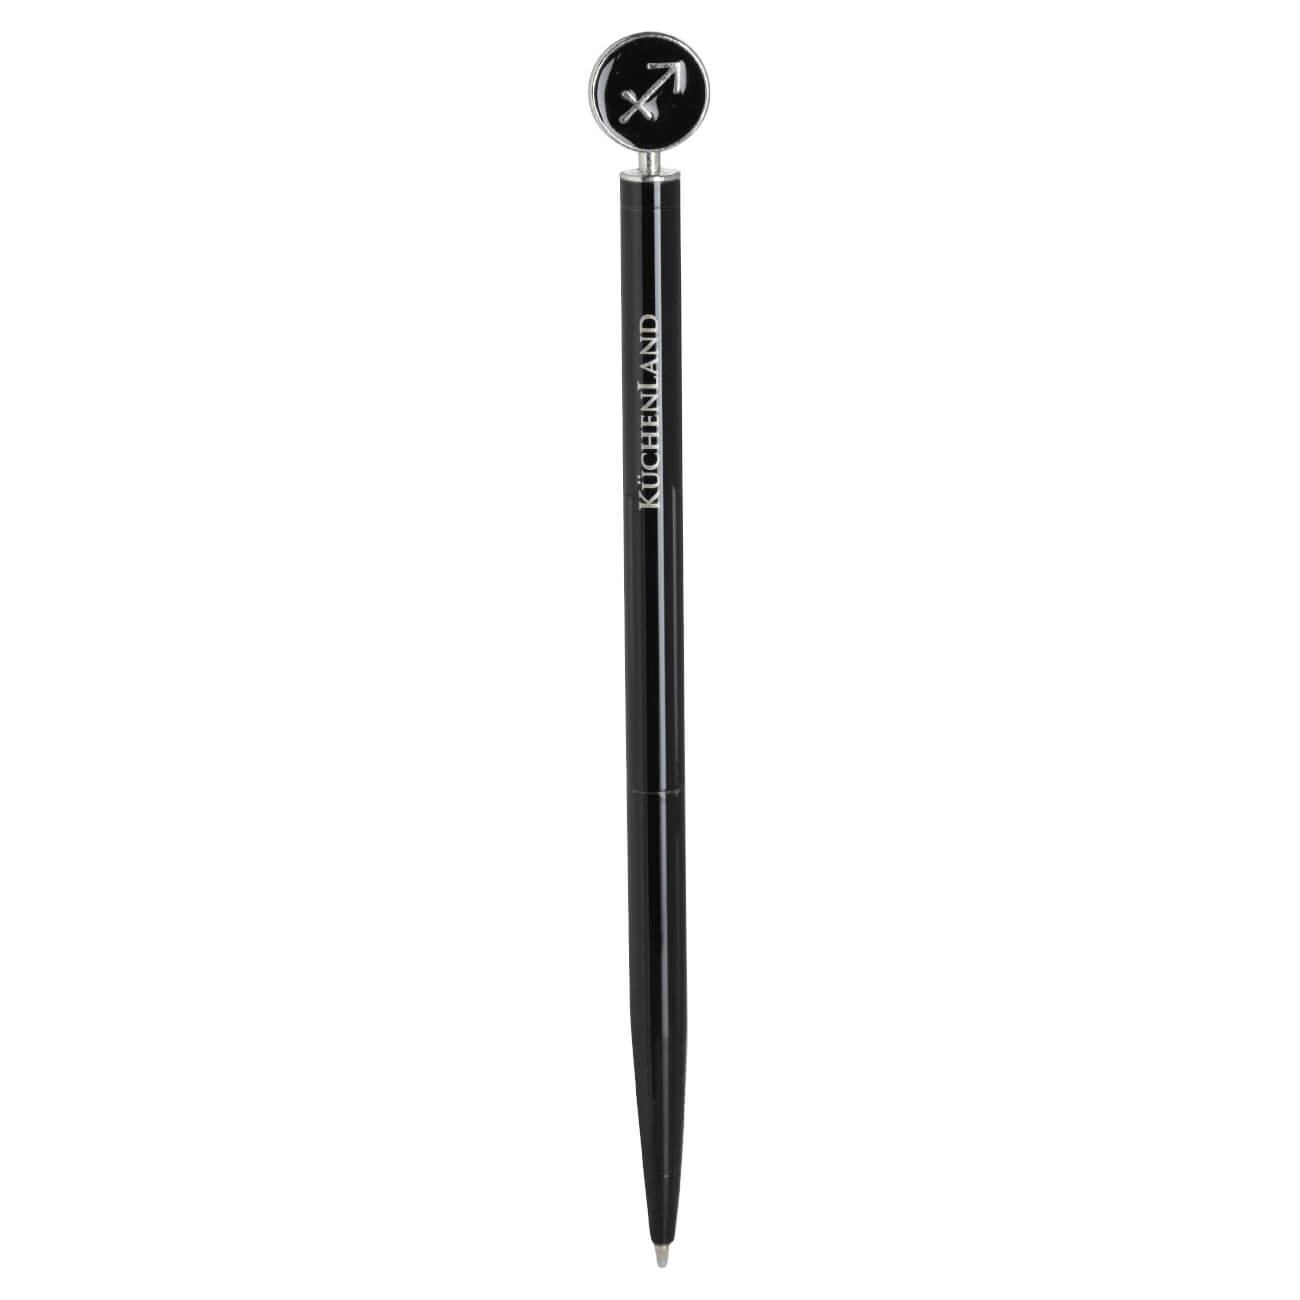 Ручка шариковая, 15 см, с фигуркой, сталь, черно-серебристая, Стрелец, Zodiac factory brass ручка роллерная